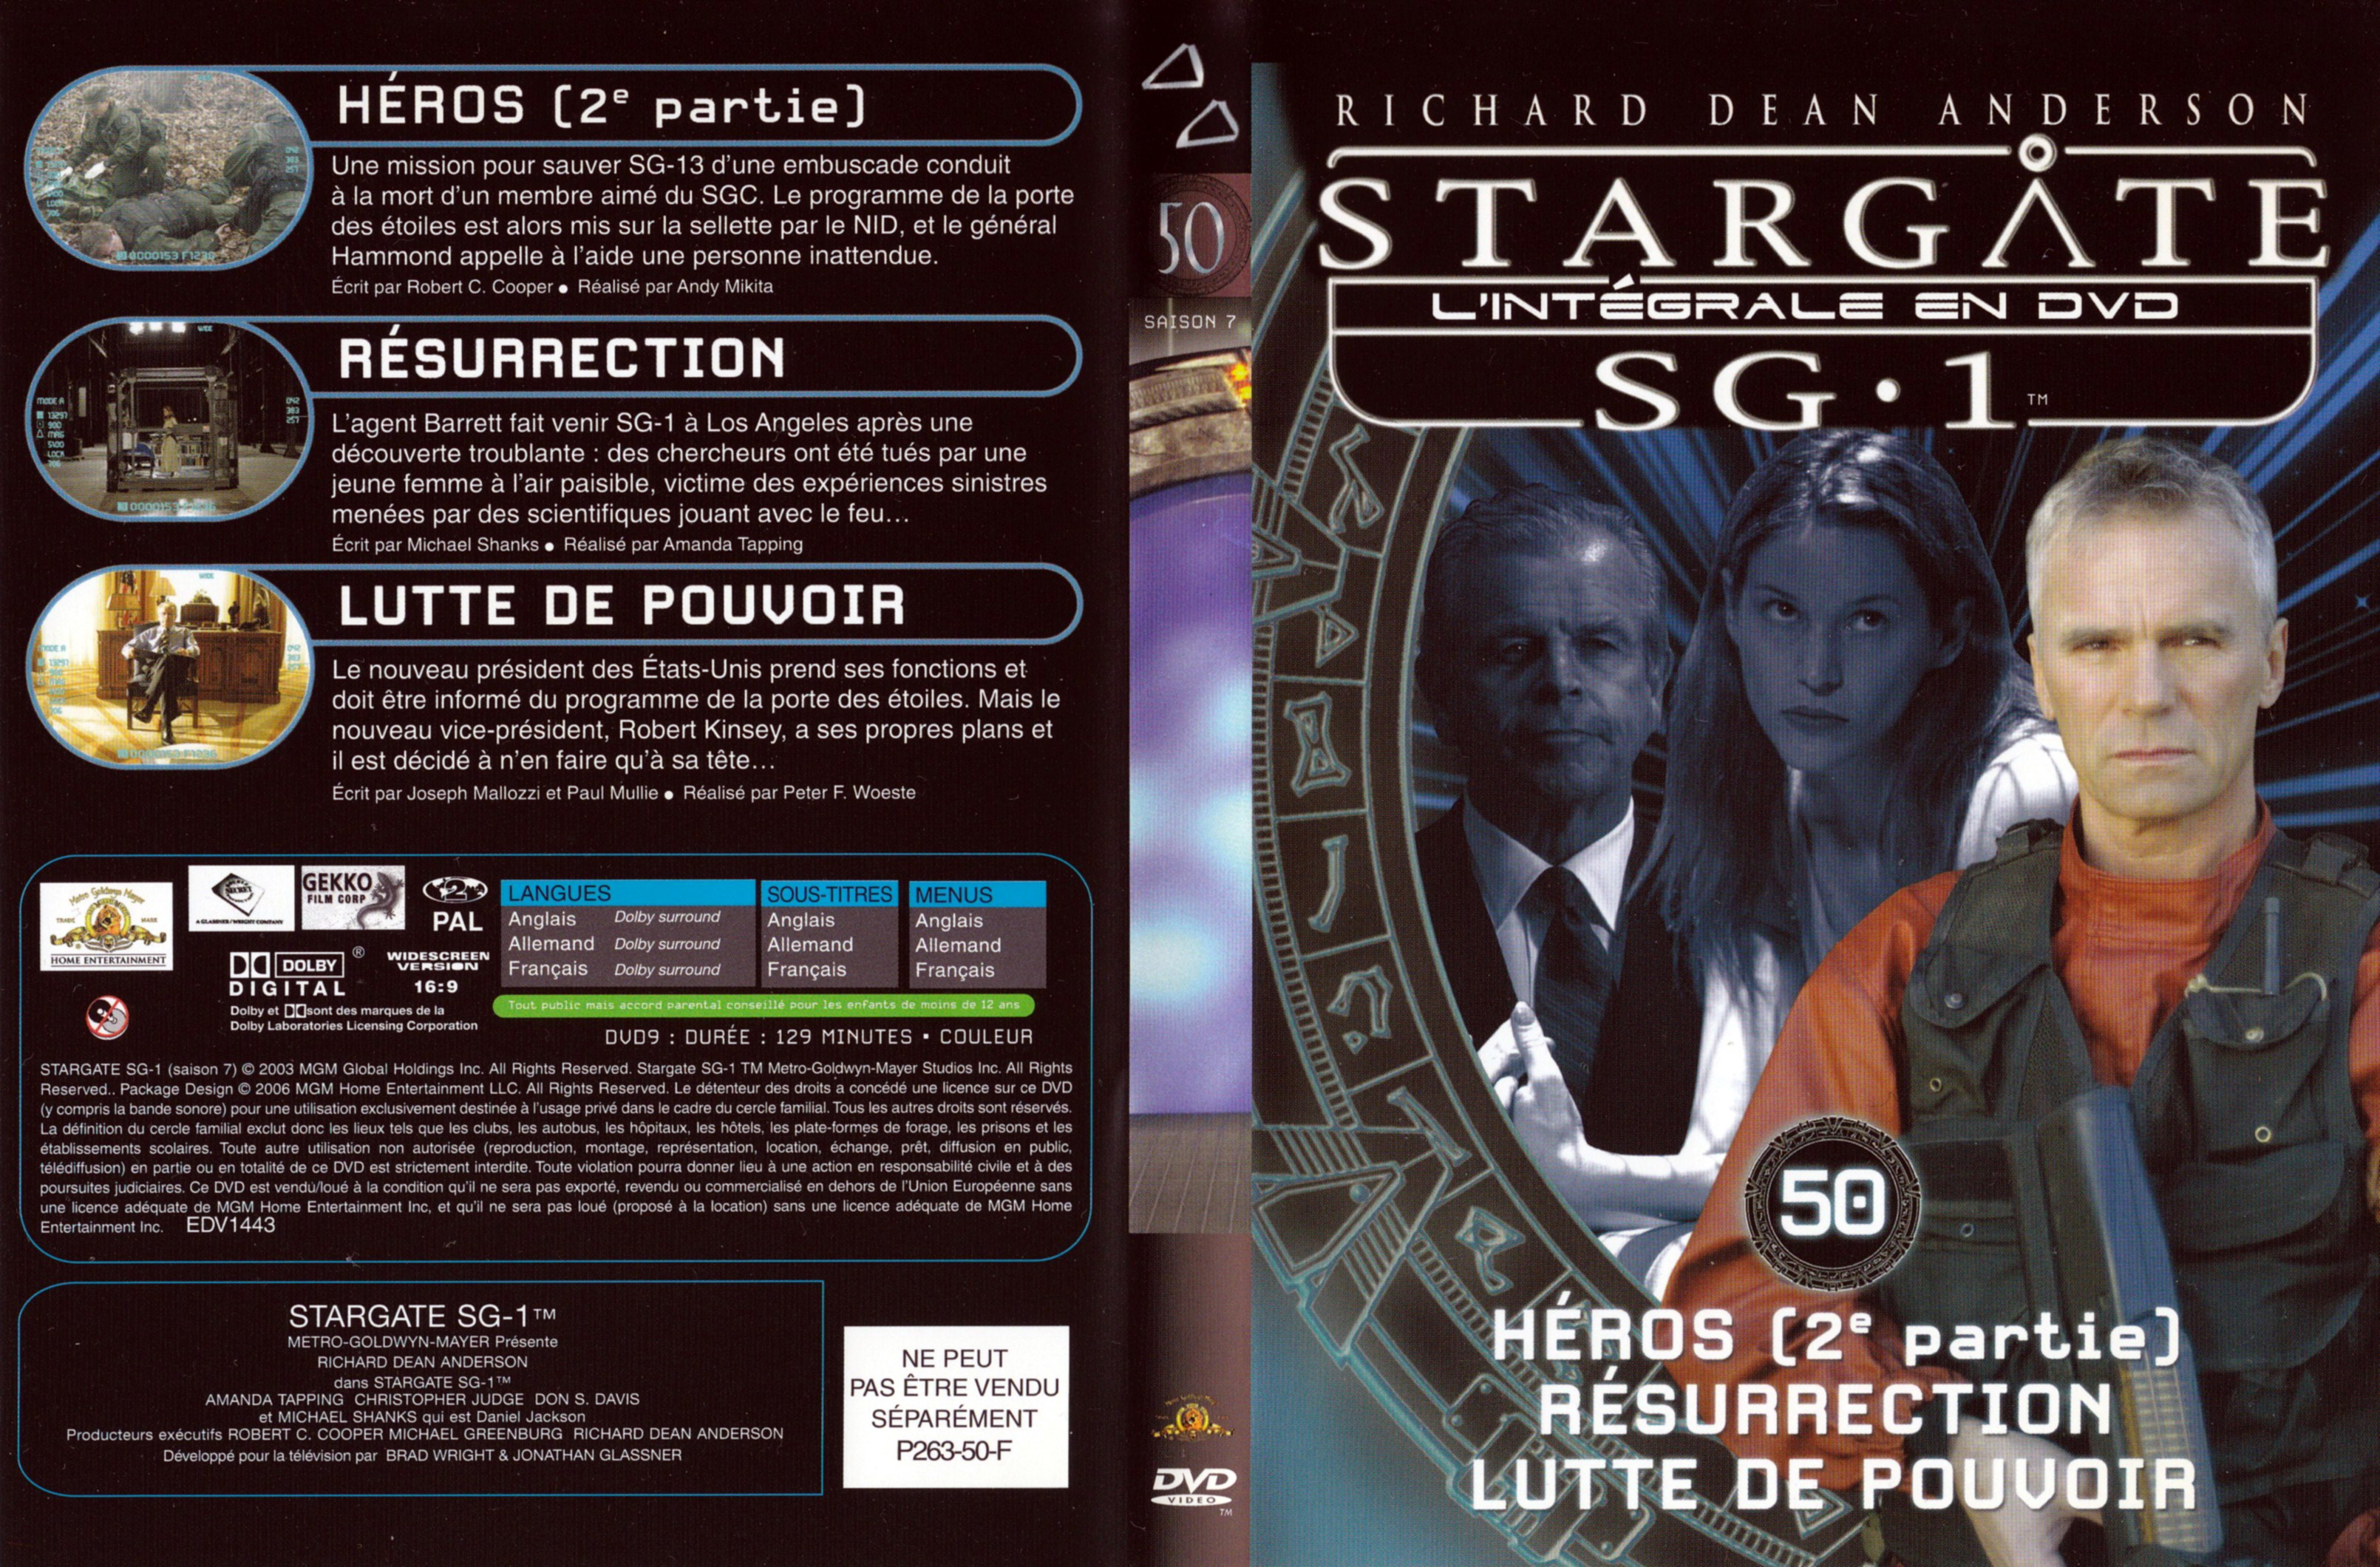 Jaquette DVD Stargate SG1 Intgrale Saison 7 vol 50